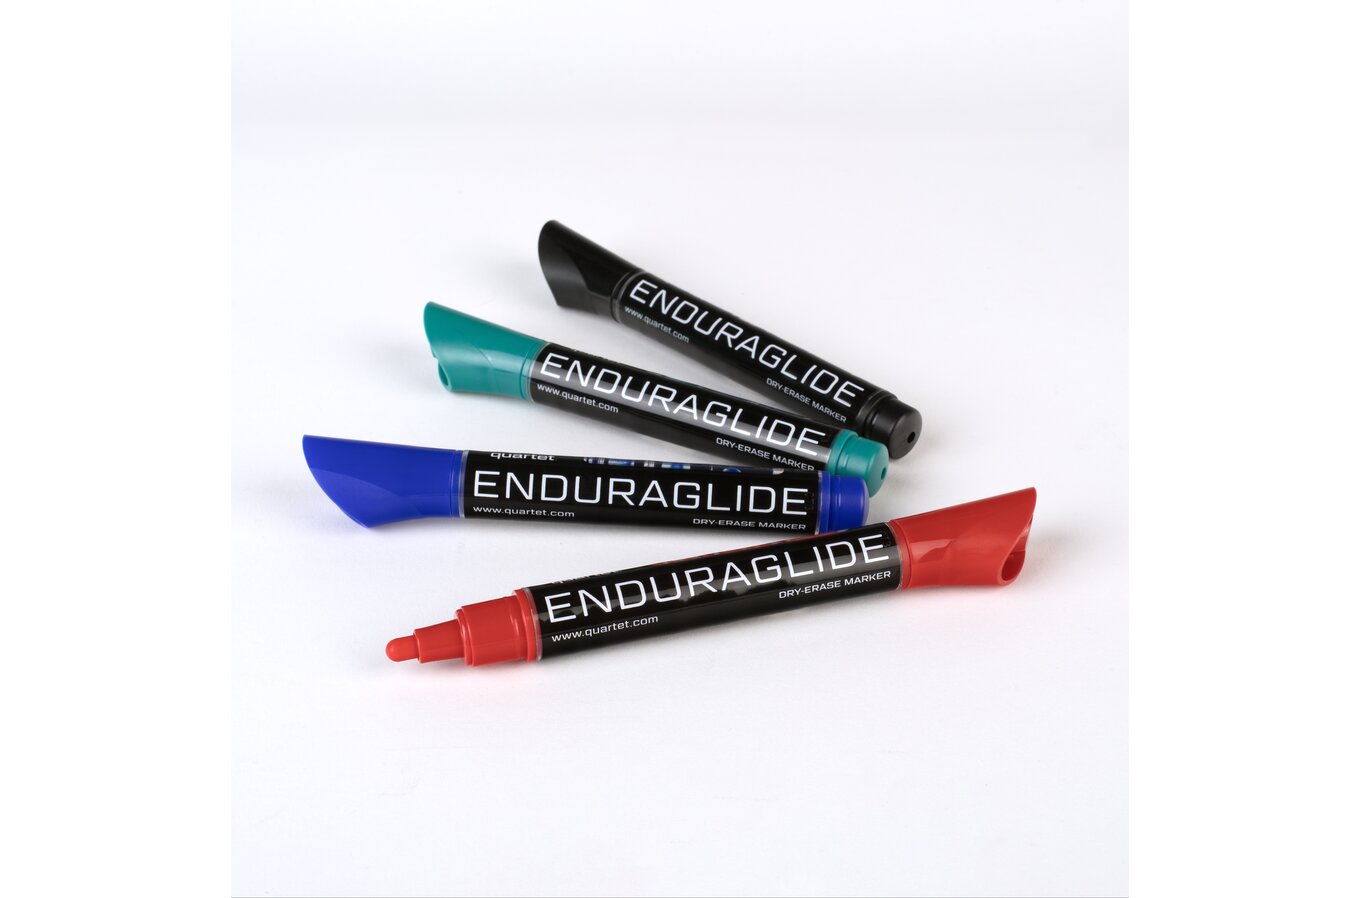 Quartet Dry Erase Markers, EnduraGlide, Chisel Tip, Bold Color, Assorted Colors, 4 Pack (5001M)